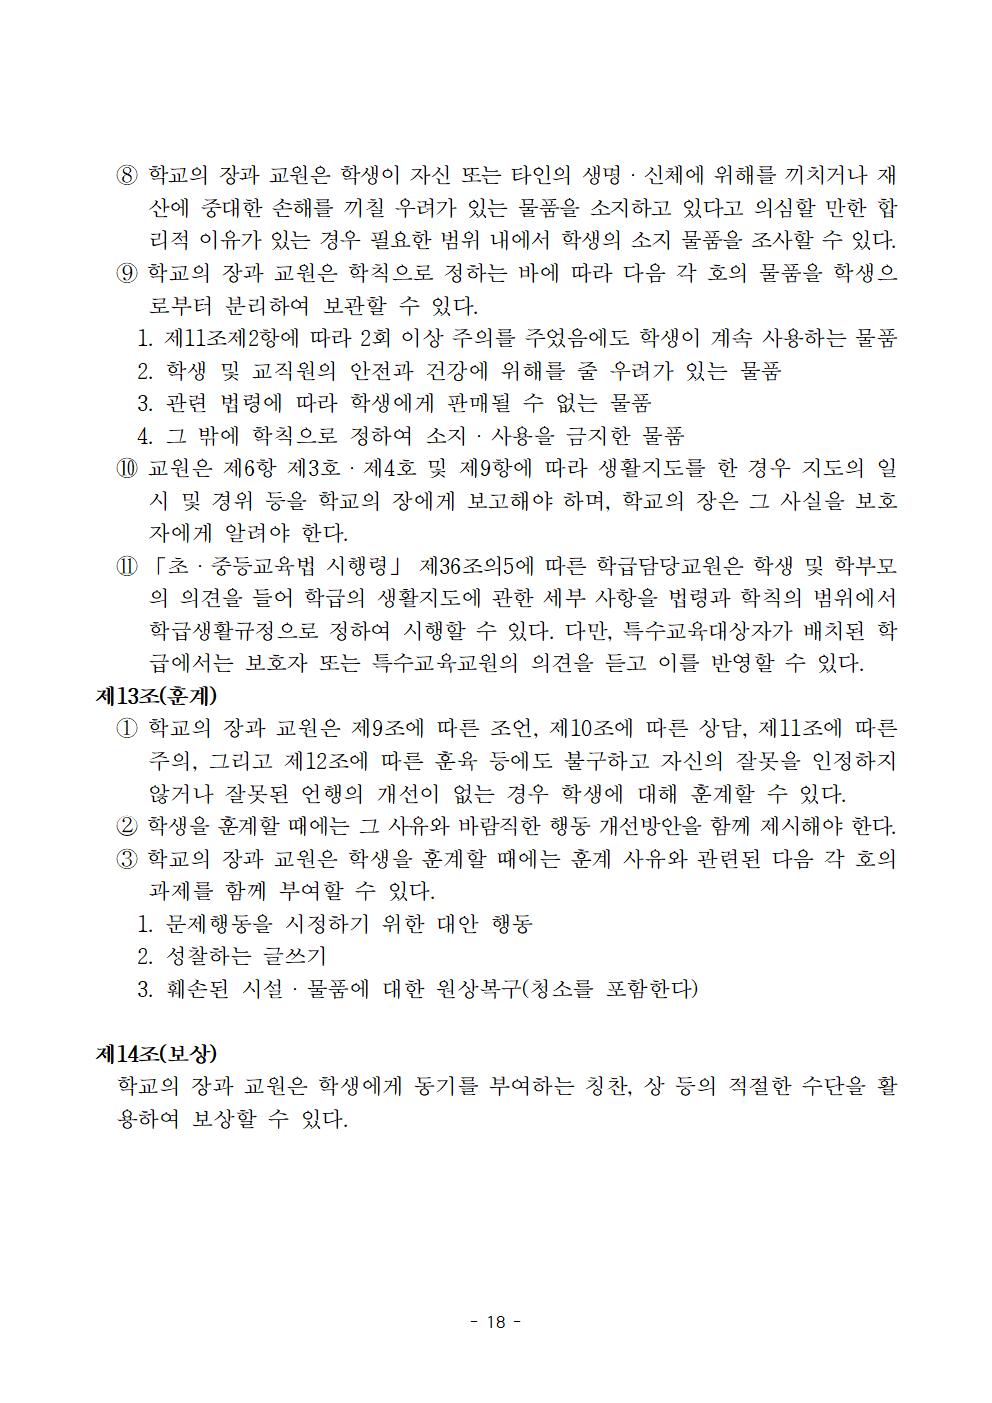 전주효천초등학교 학생의 학교생활에 관한 규정(전부개정, 23.12.22. 공포)018